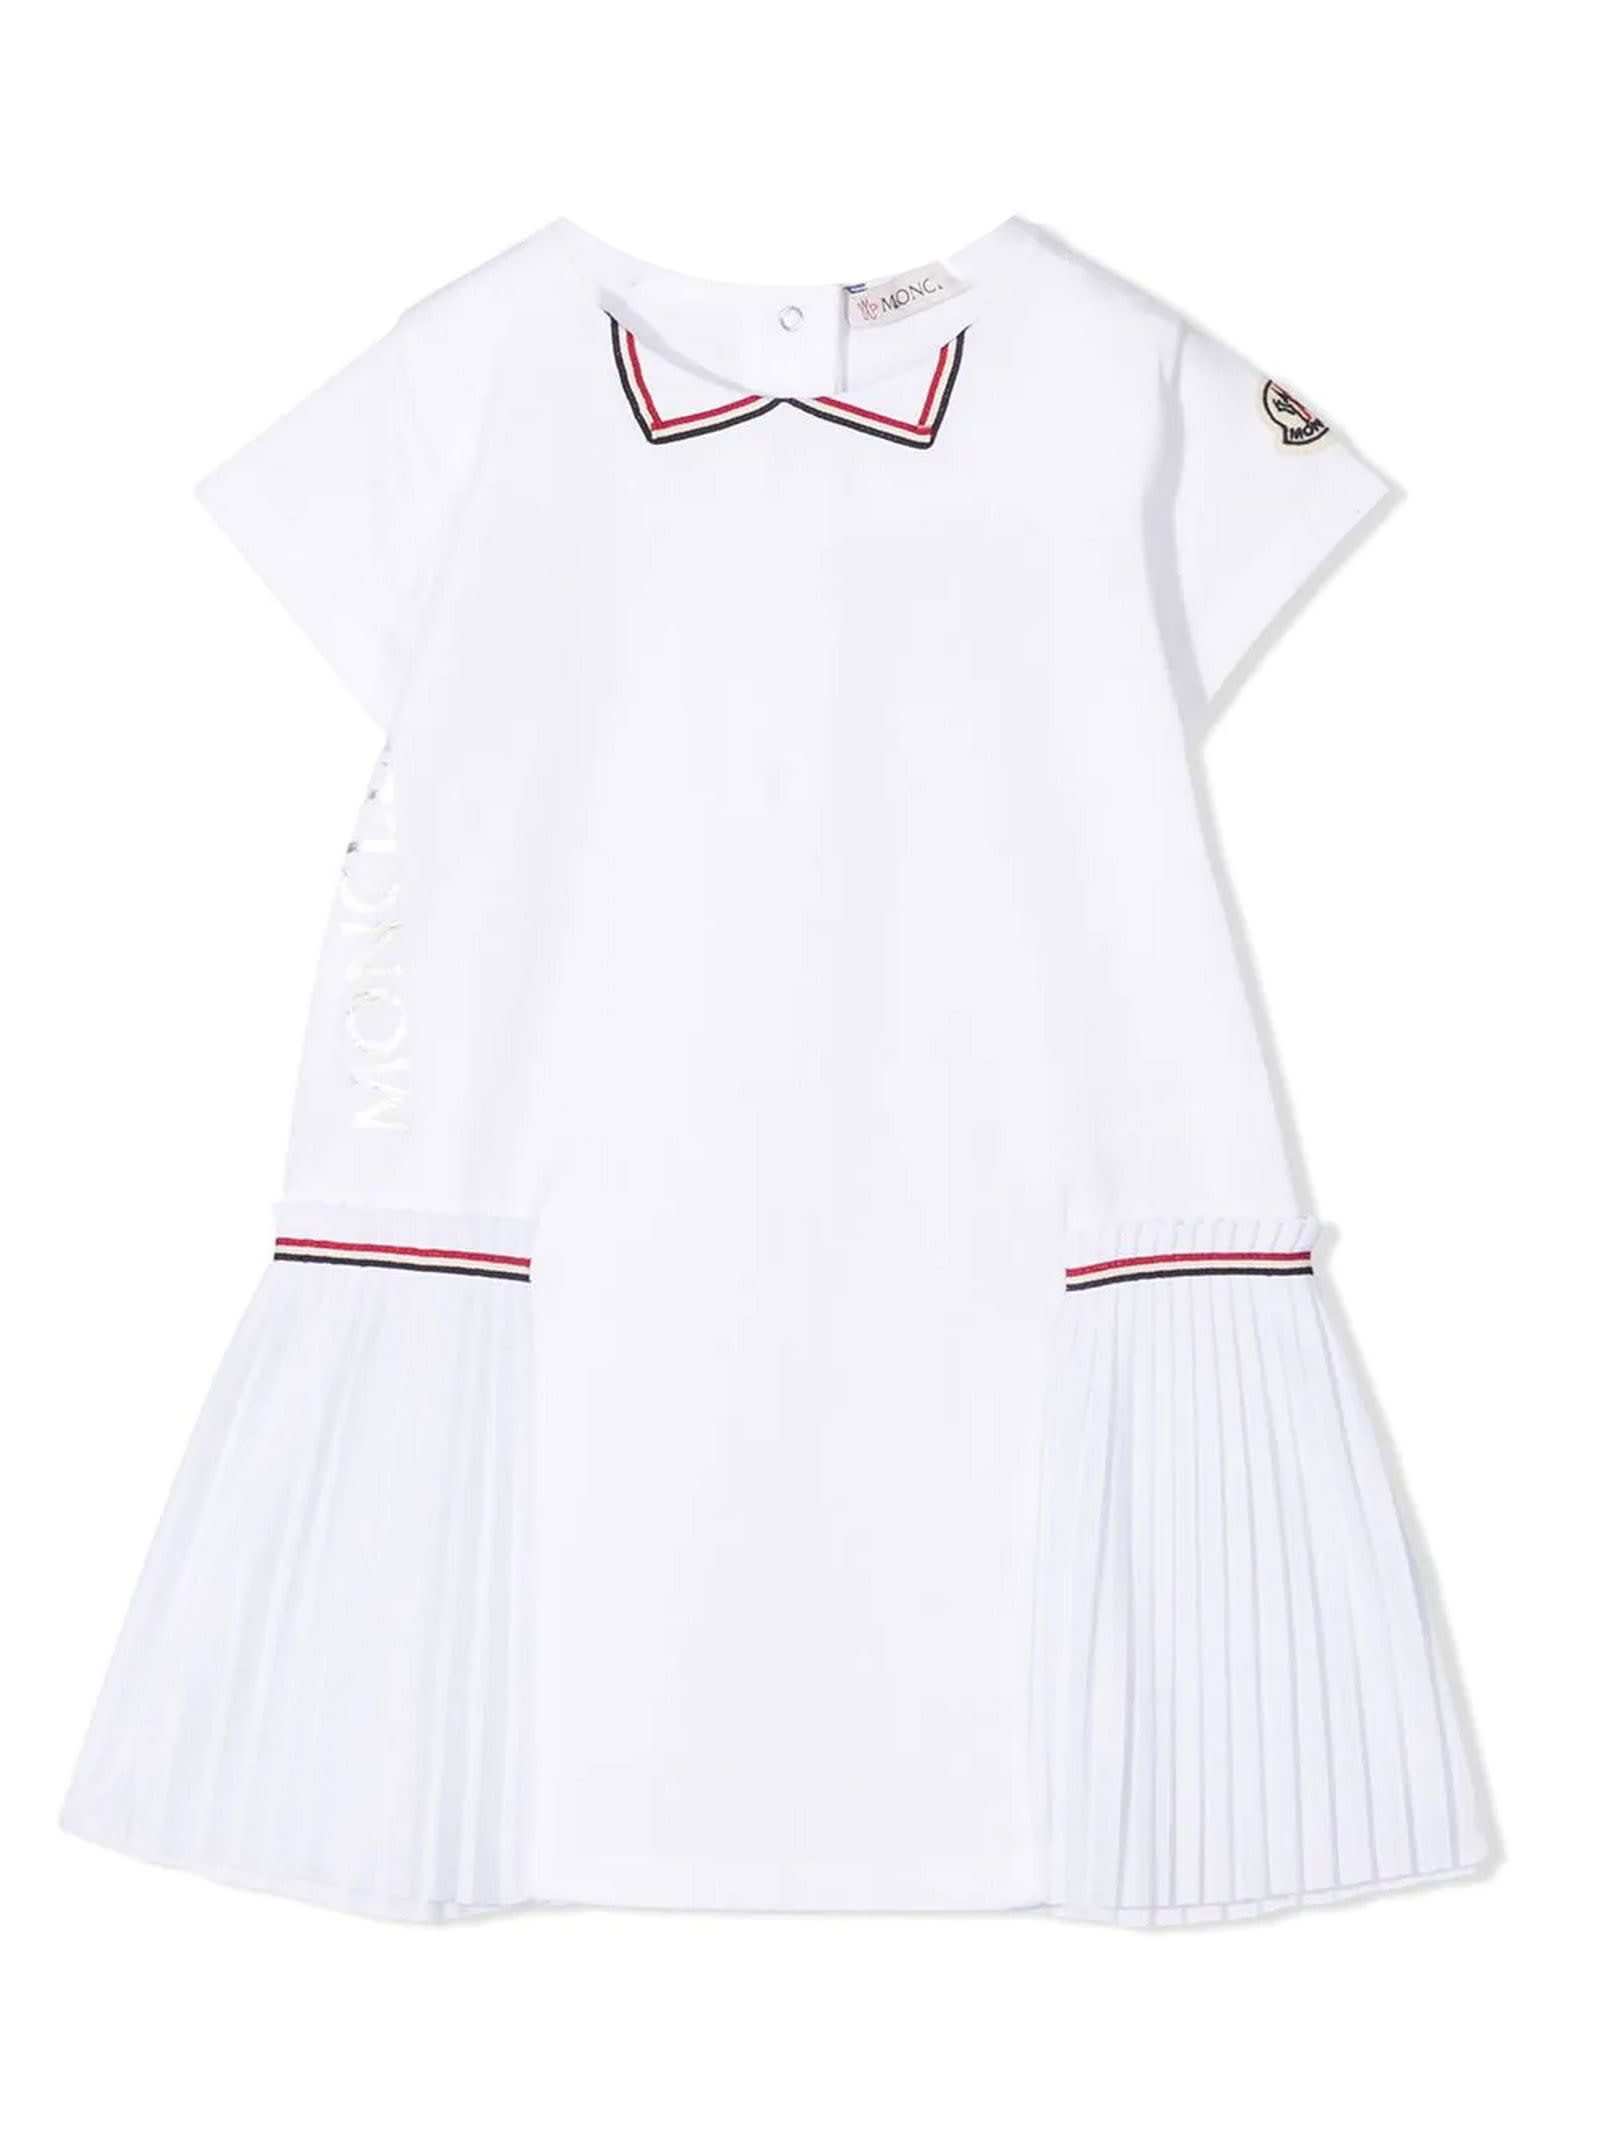 Moncler White Stretch-cotton T-shirt Dress